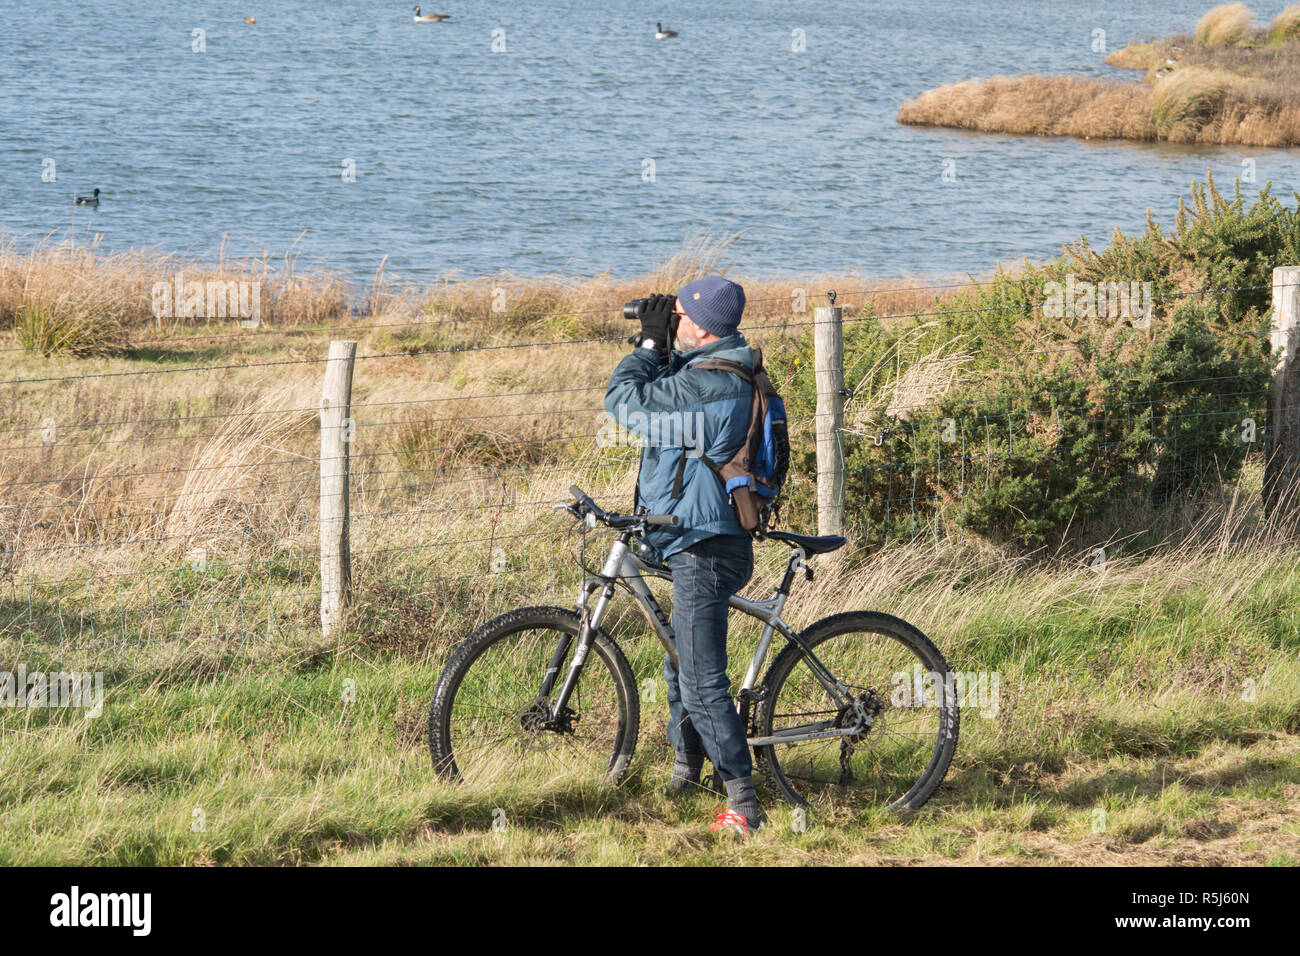 RSPB Medmerry Reserva Natural por la costa, West Sussex, Reino Unido. Birdwatcher sobre una bicicleta mirando a los pájaros en las piscinas en zancos a través de unos prismáticos Foto de stock